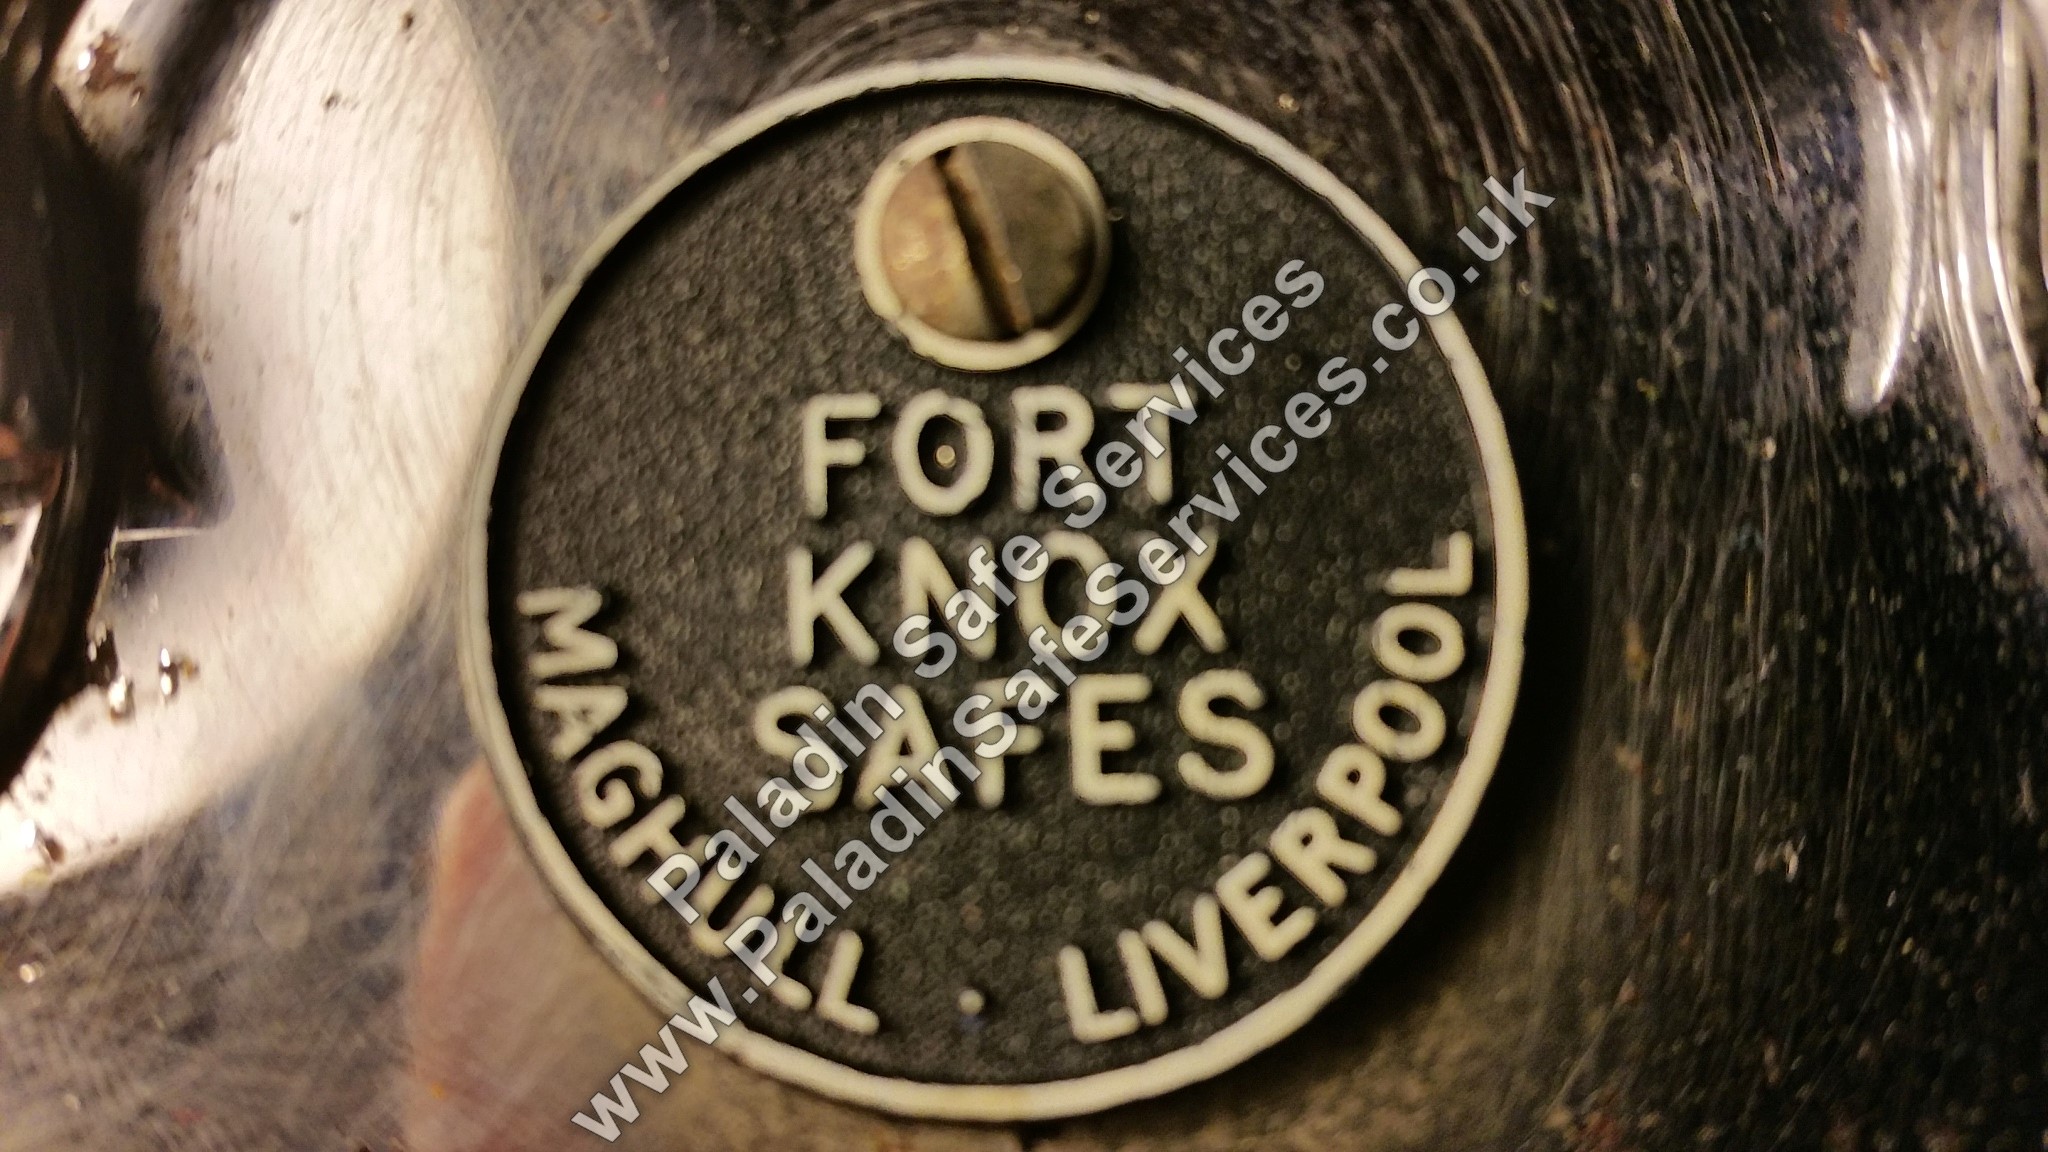 Fort Knox Safe Lost Keys